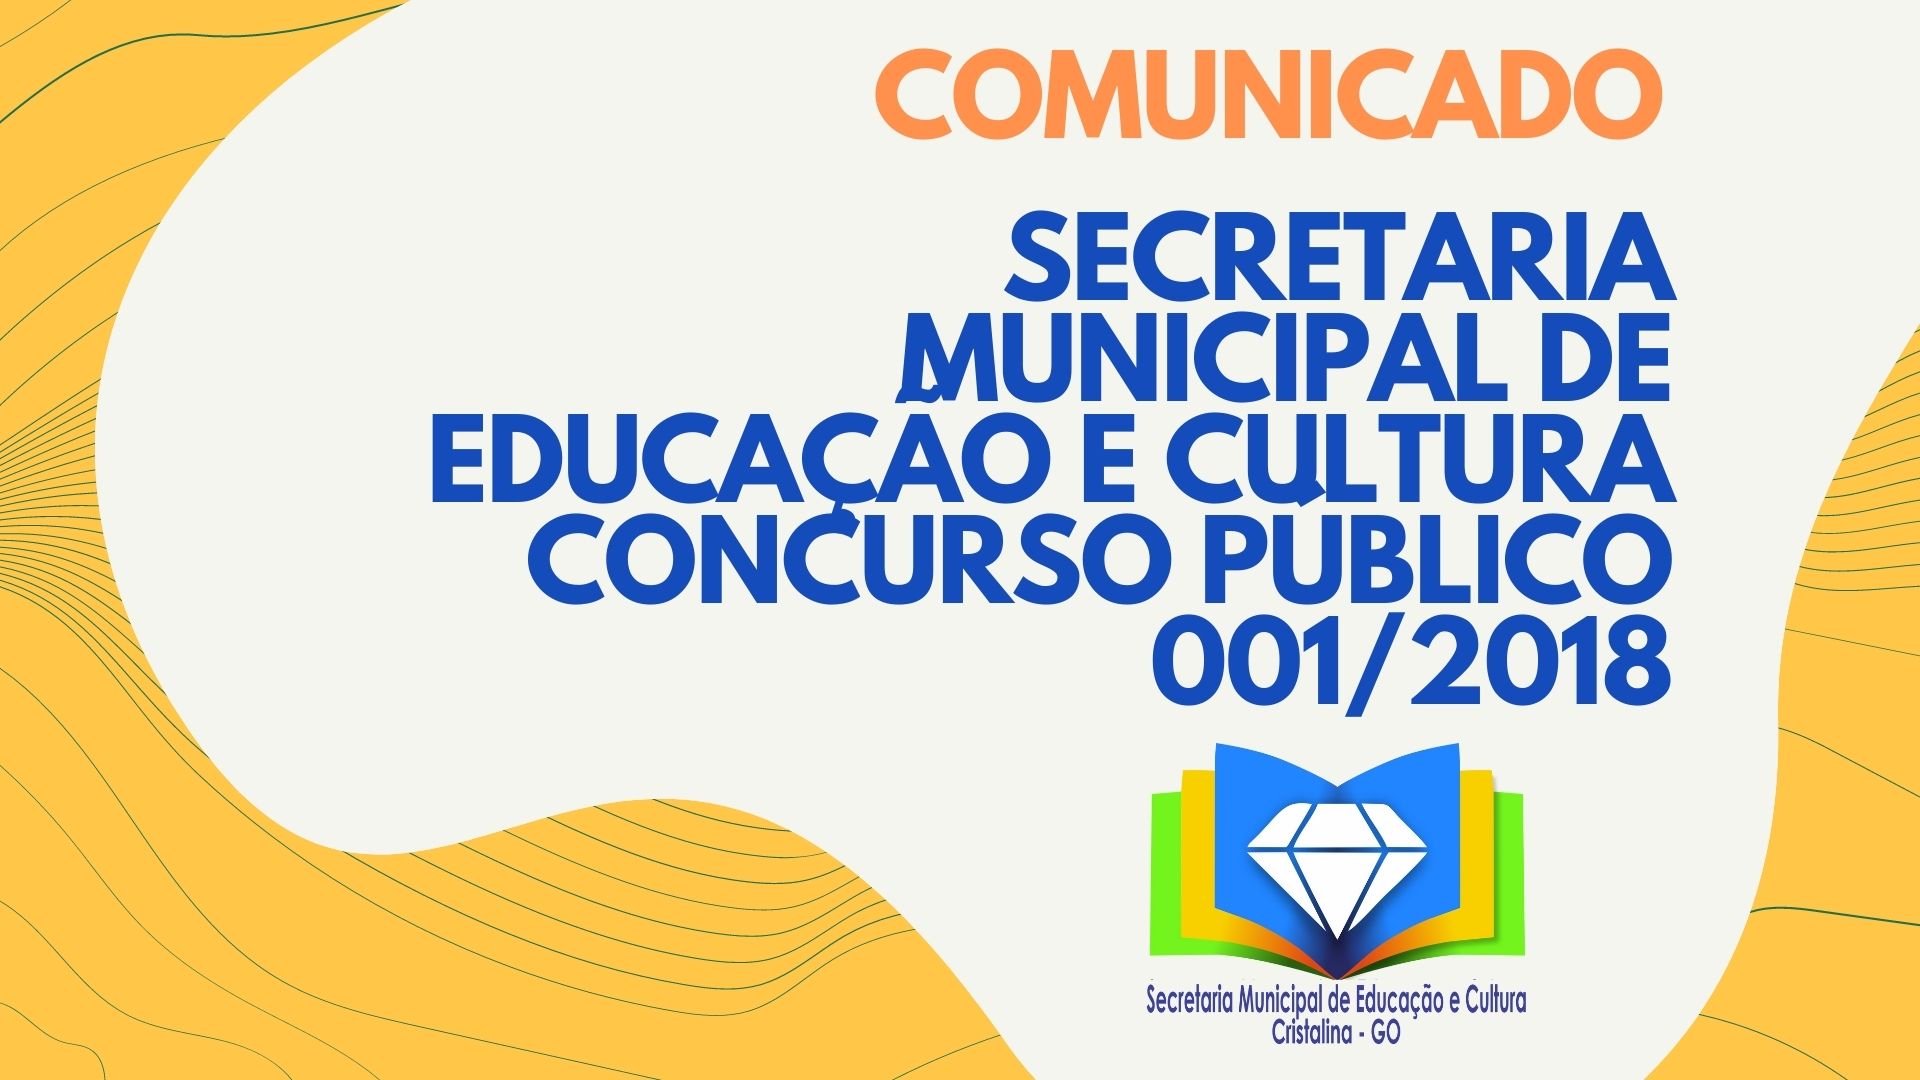 SECRETARIA MUNICIPAL DE EDUCAÇÃO E CULTURA CONCURSO PÚBLICO 001/2018